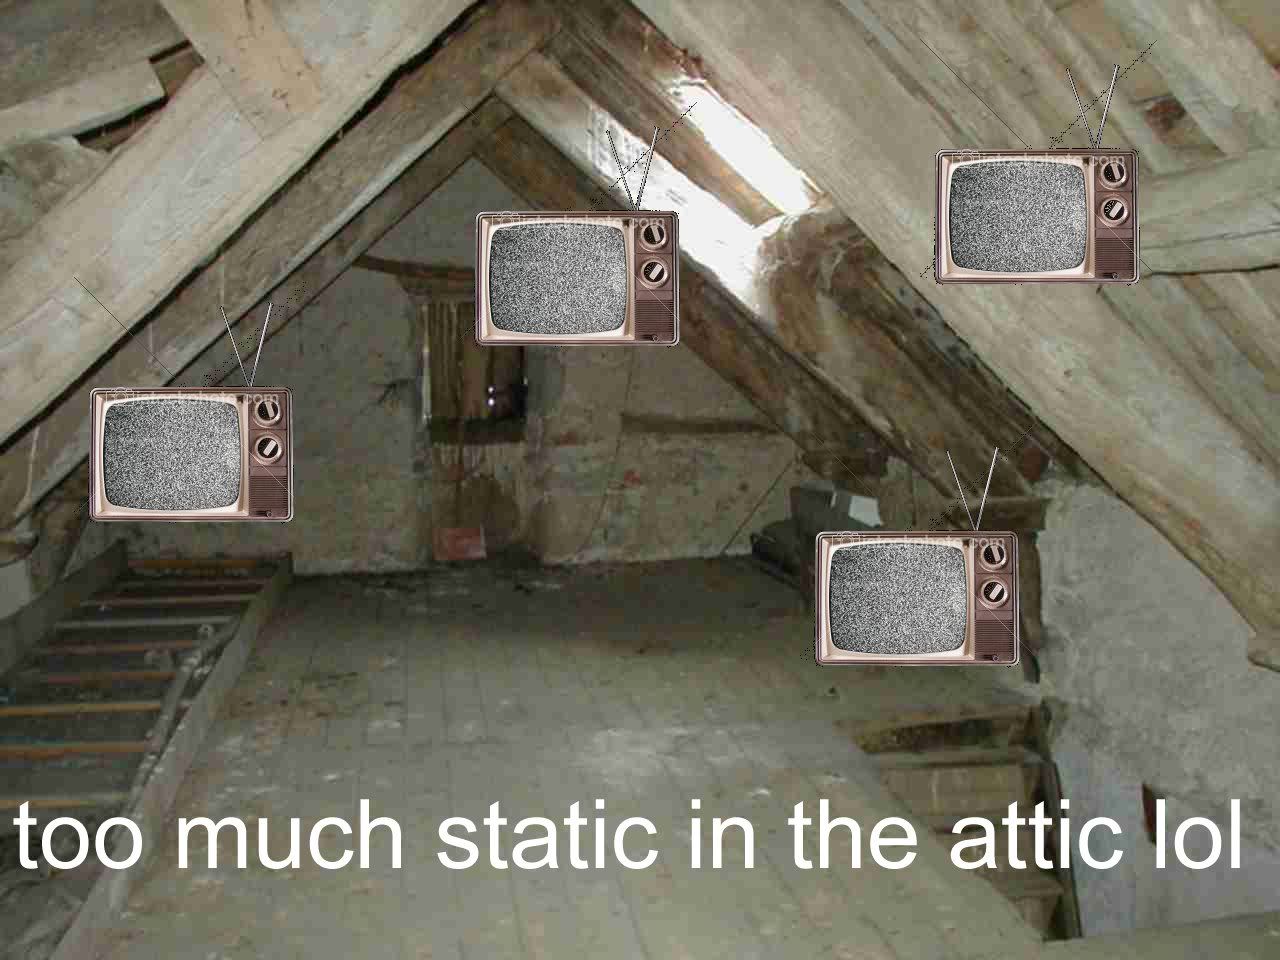 attic.jpg